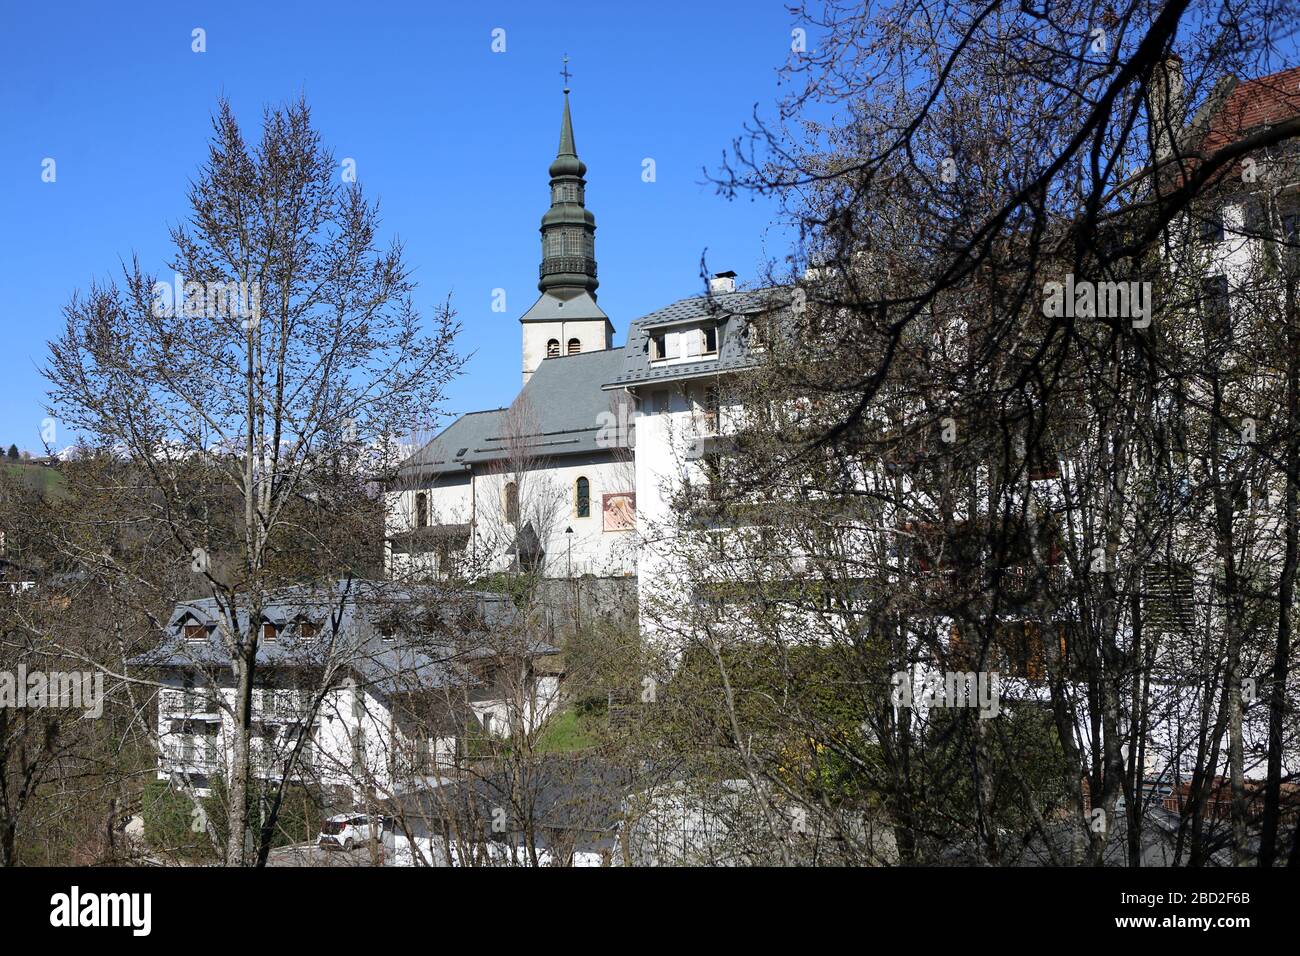 Eglise Saint-Gervais-et-Protais. Façades d'immeubles. Saint-Gervais-les-Bains. Haute-Savoie. France. Stock Photo